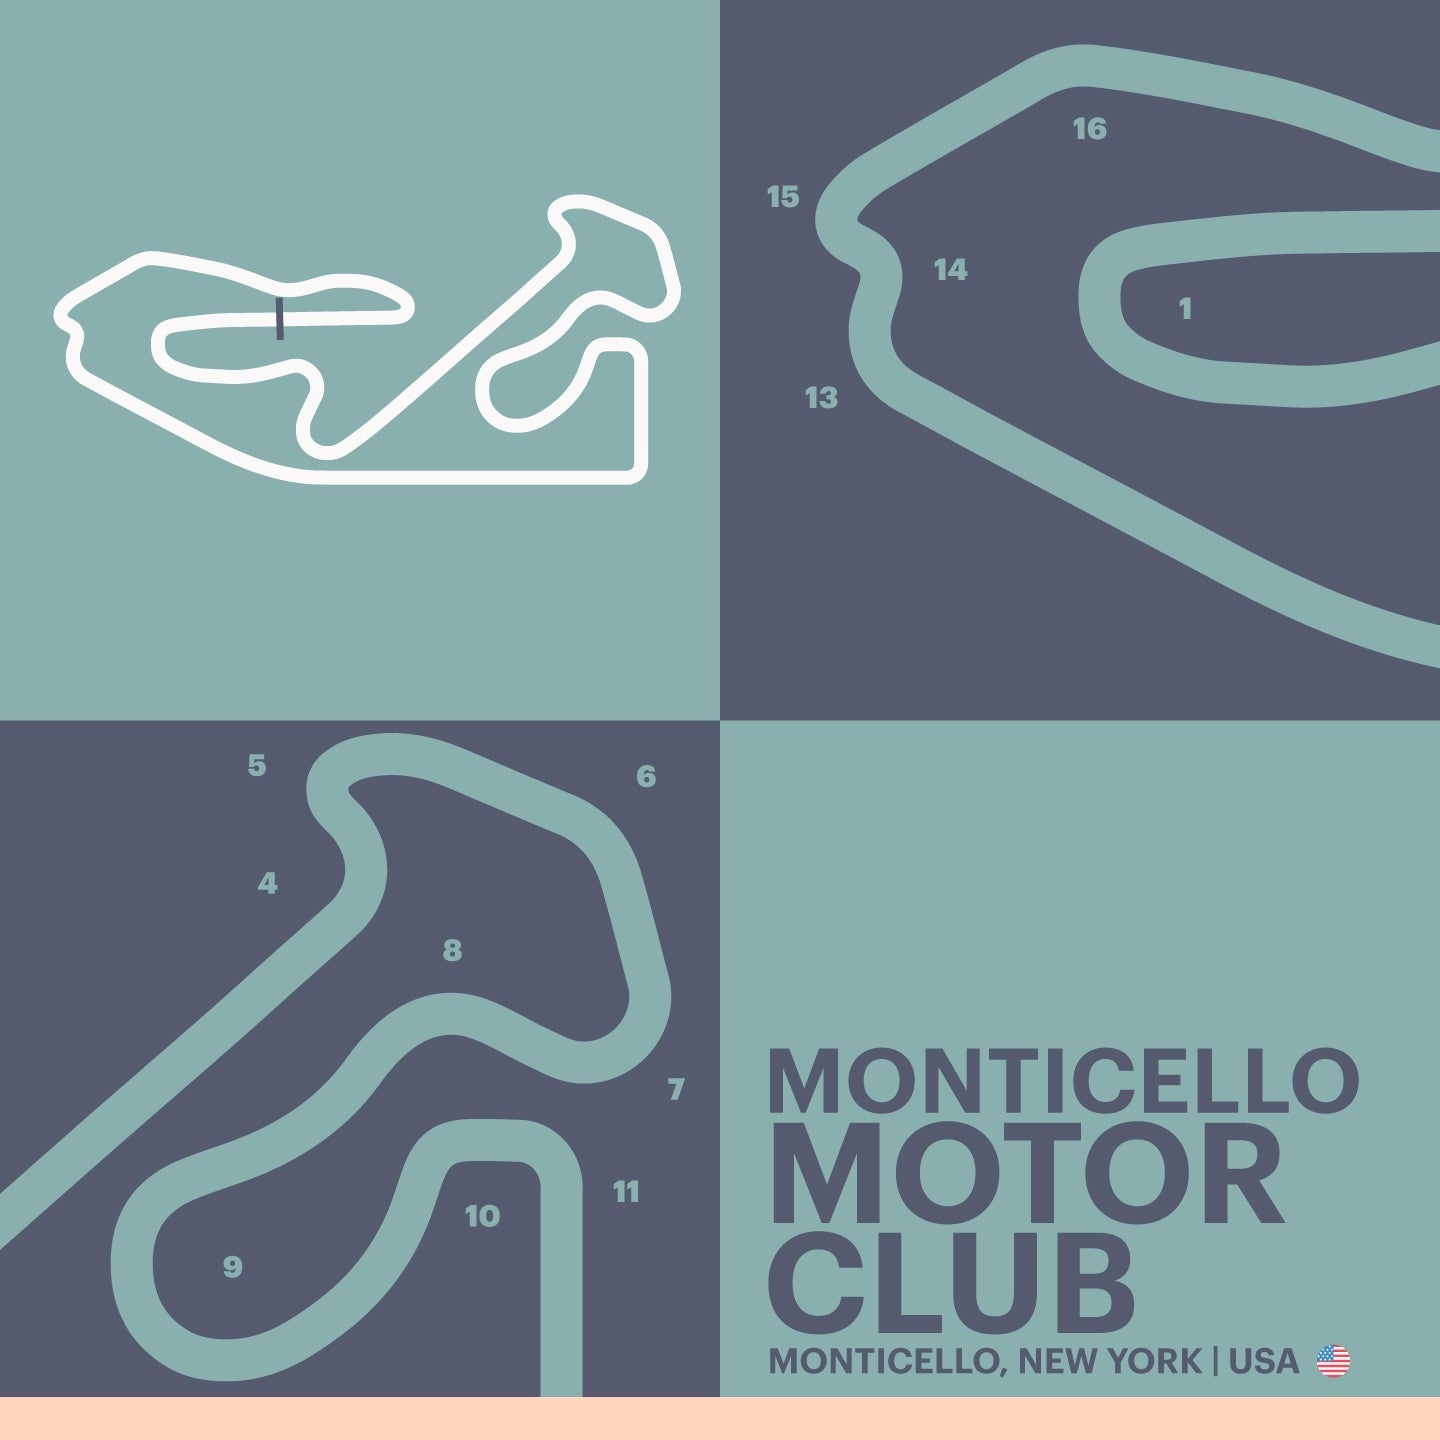 Monticello Motor Club - Garagista Series